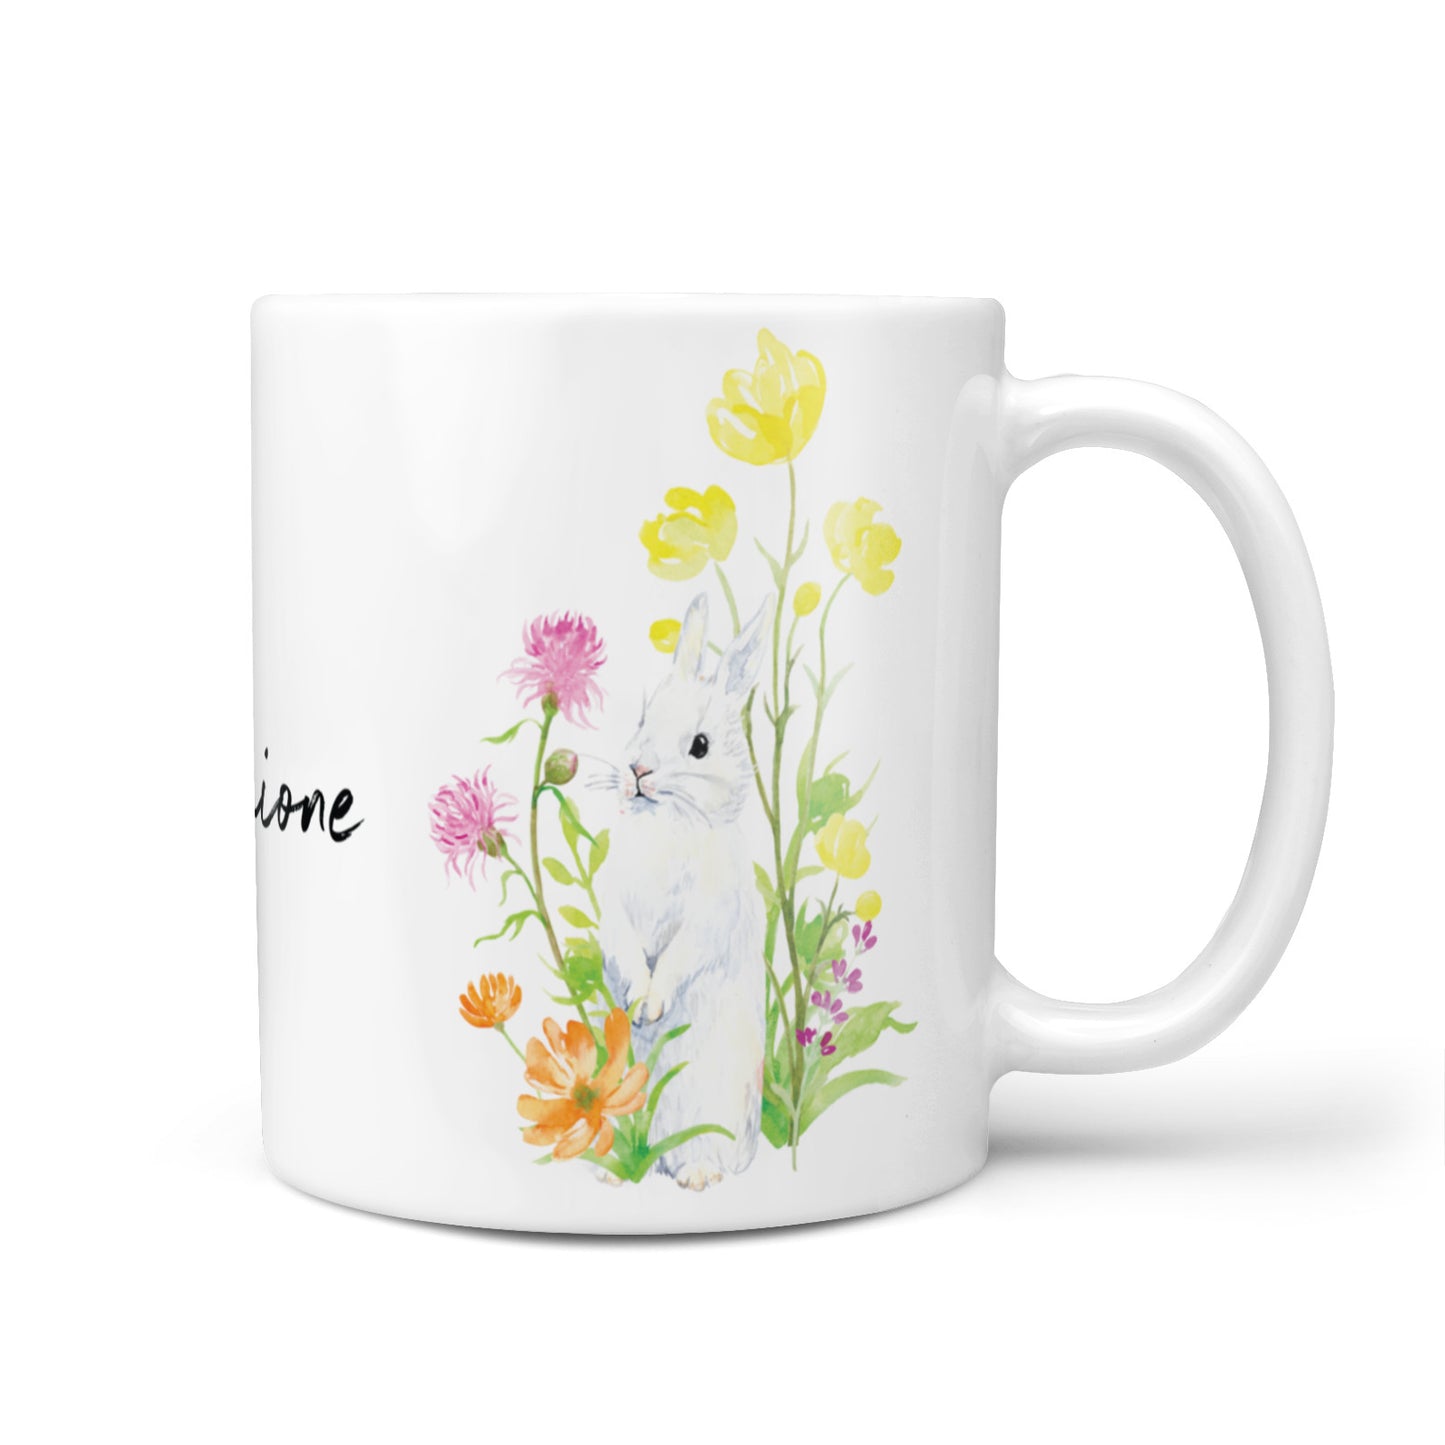 Personalised Bunny Rabbit 10oz Mug